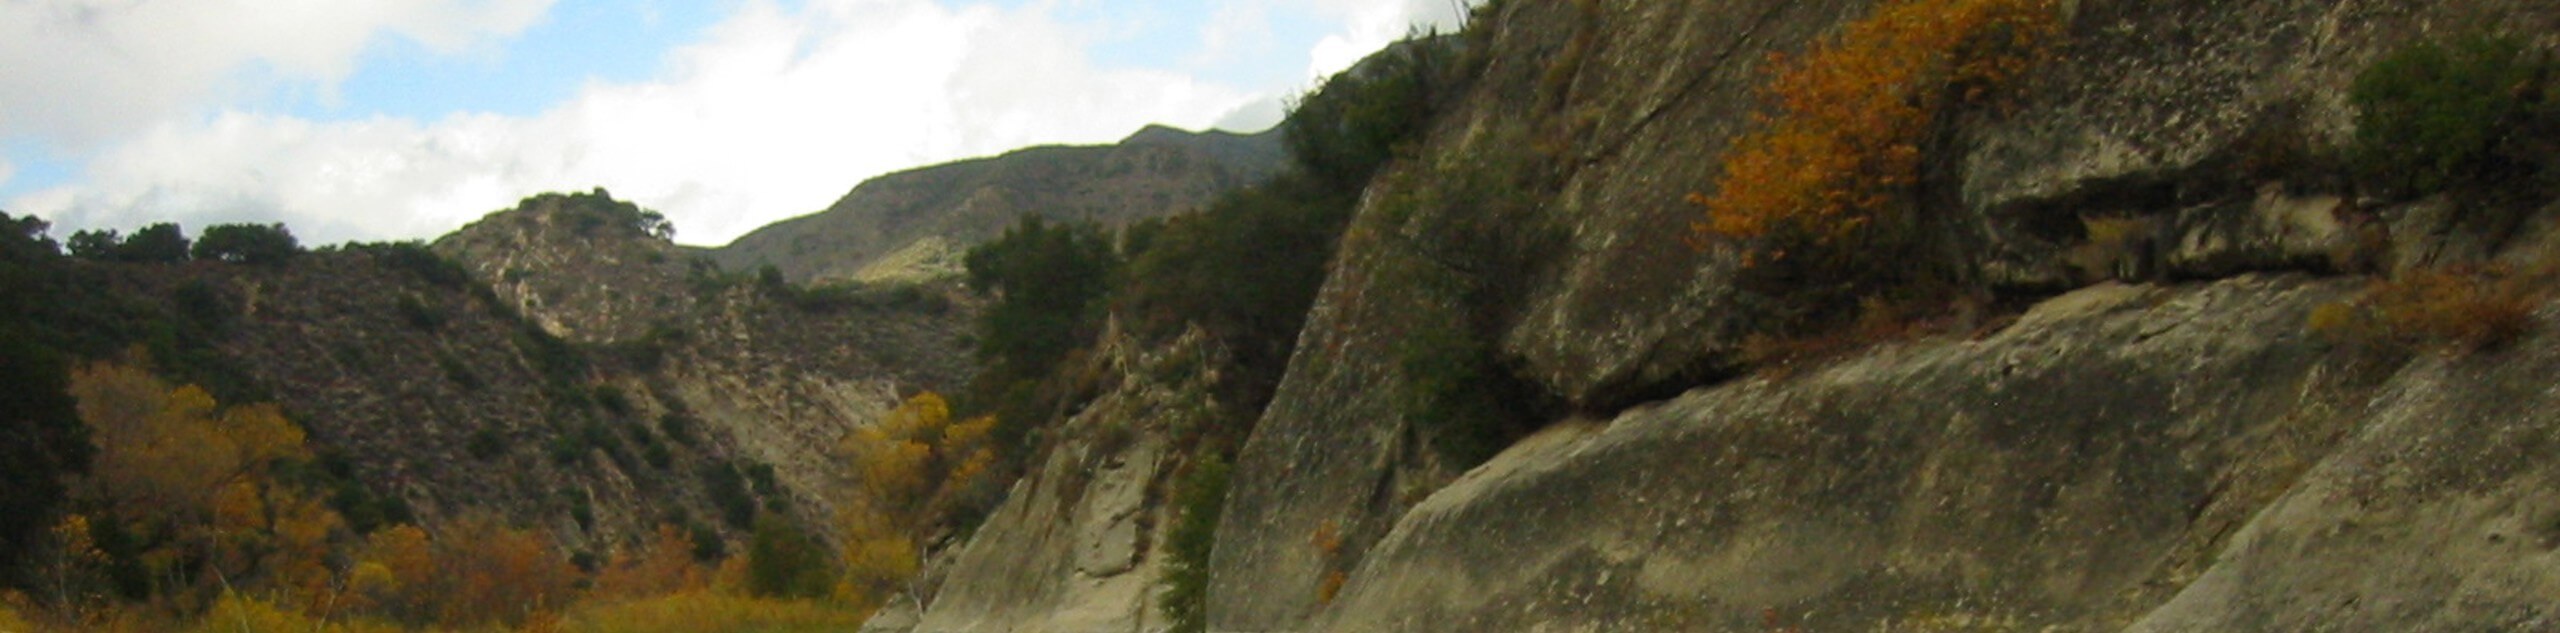 Red Rock Loop Trail